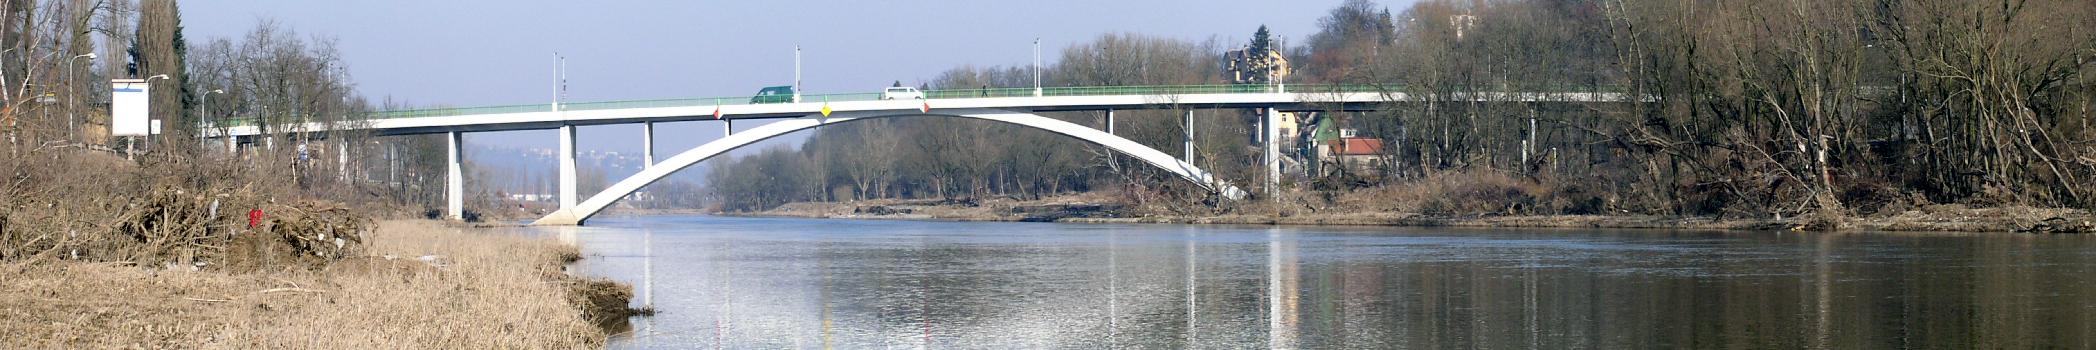 Peace Race Bridge